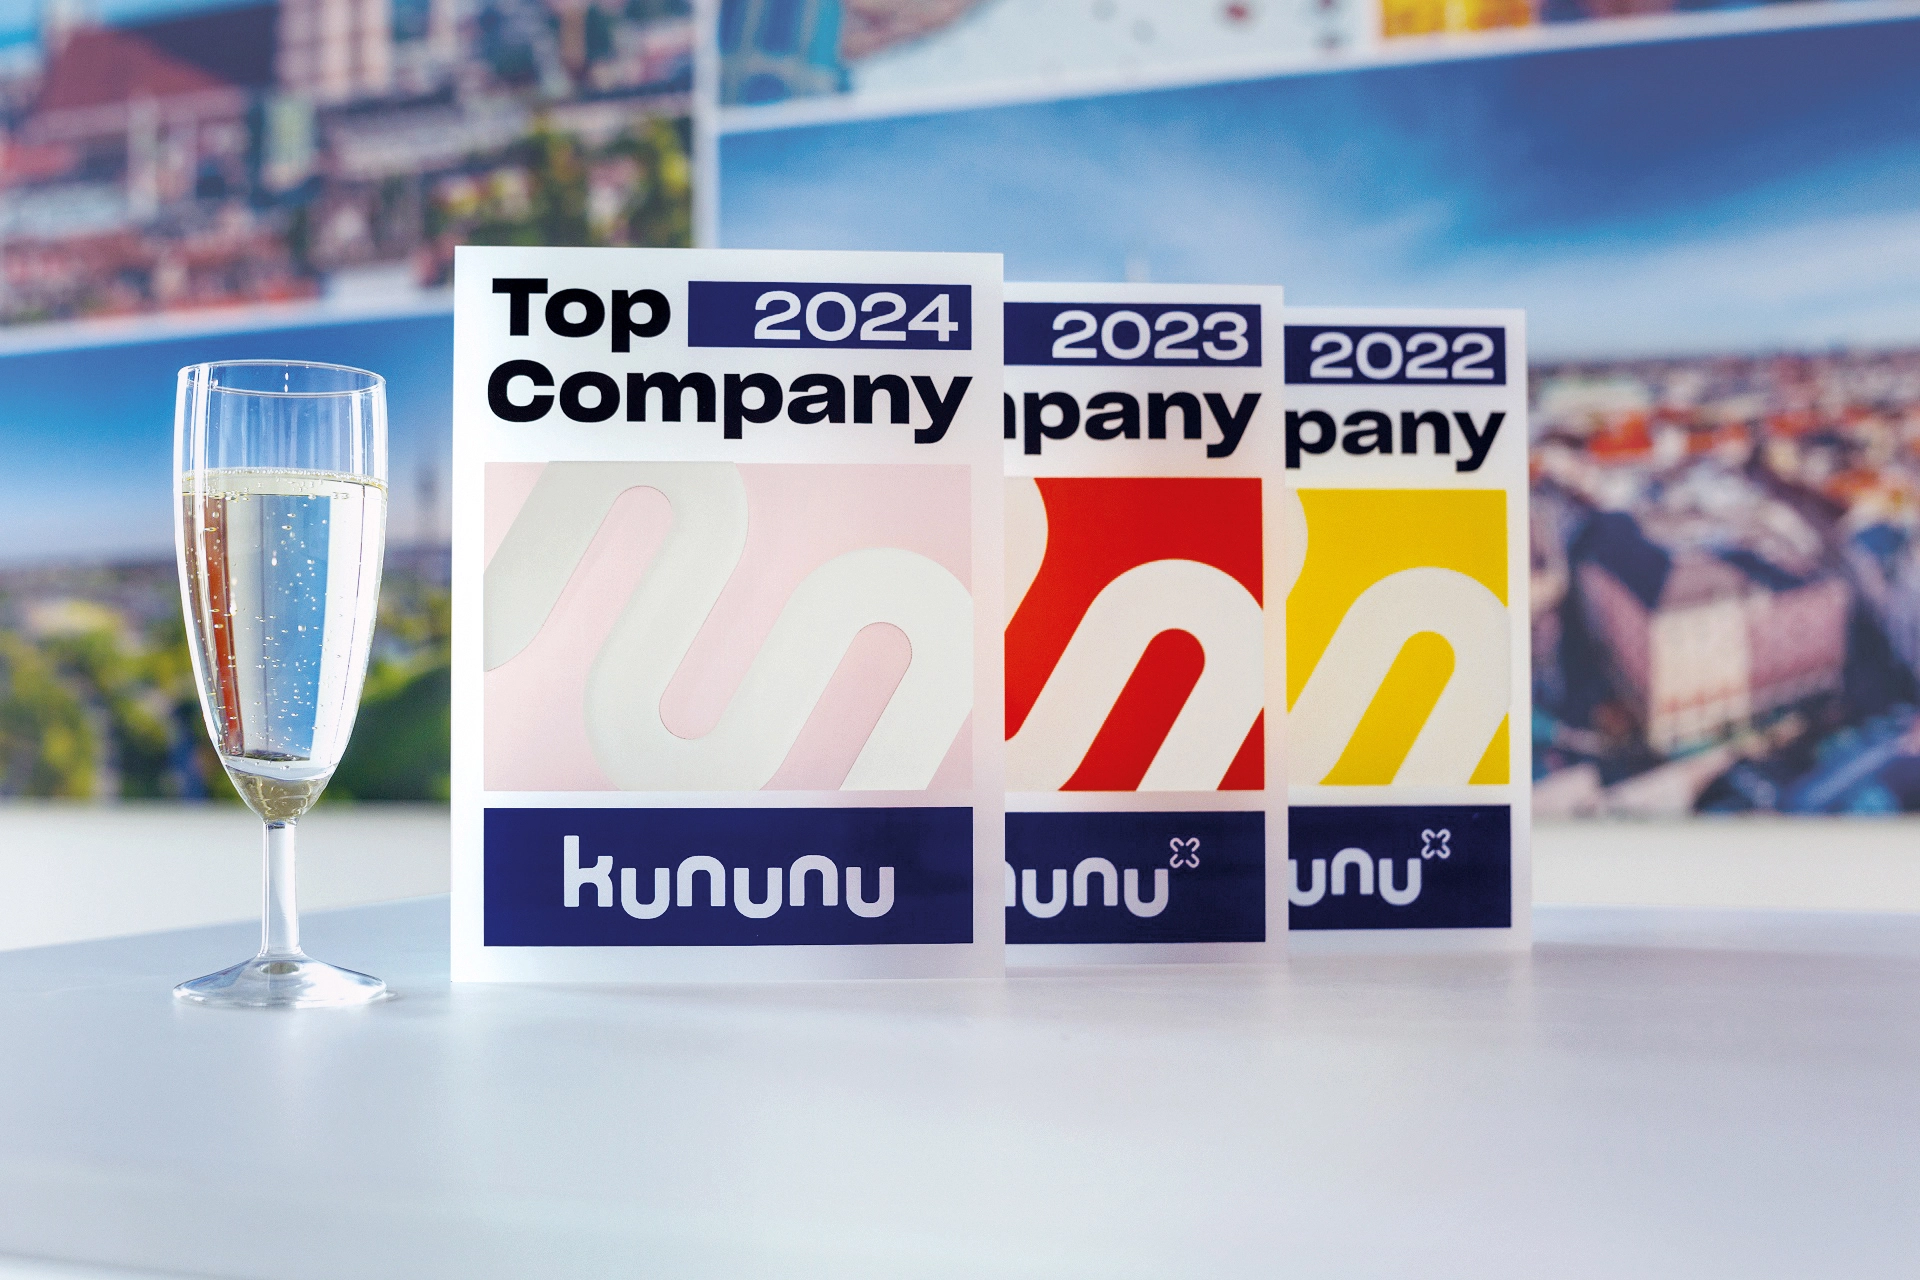 Amadeus Fire Kununu Top Company Award 2024, 2023 und 2022, neben einem Champagne Glass